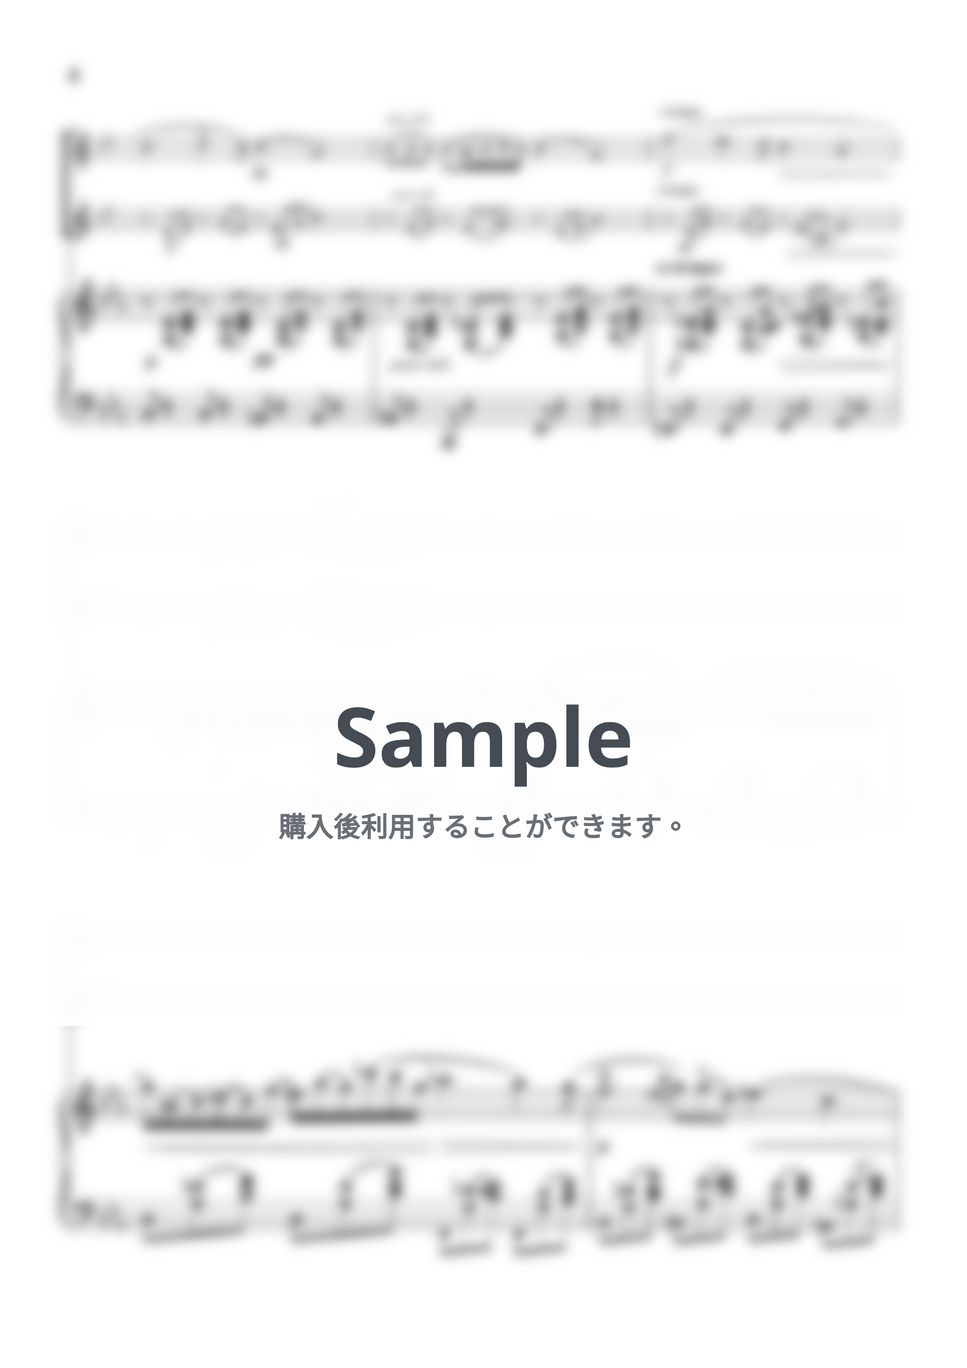 ショパン - ノクターン第2番 (ピアノトリオ/ホルンデュオ) by pfkaori